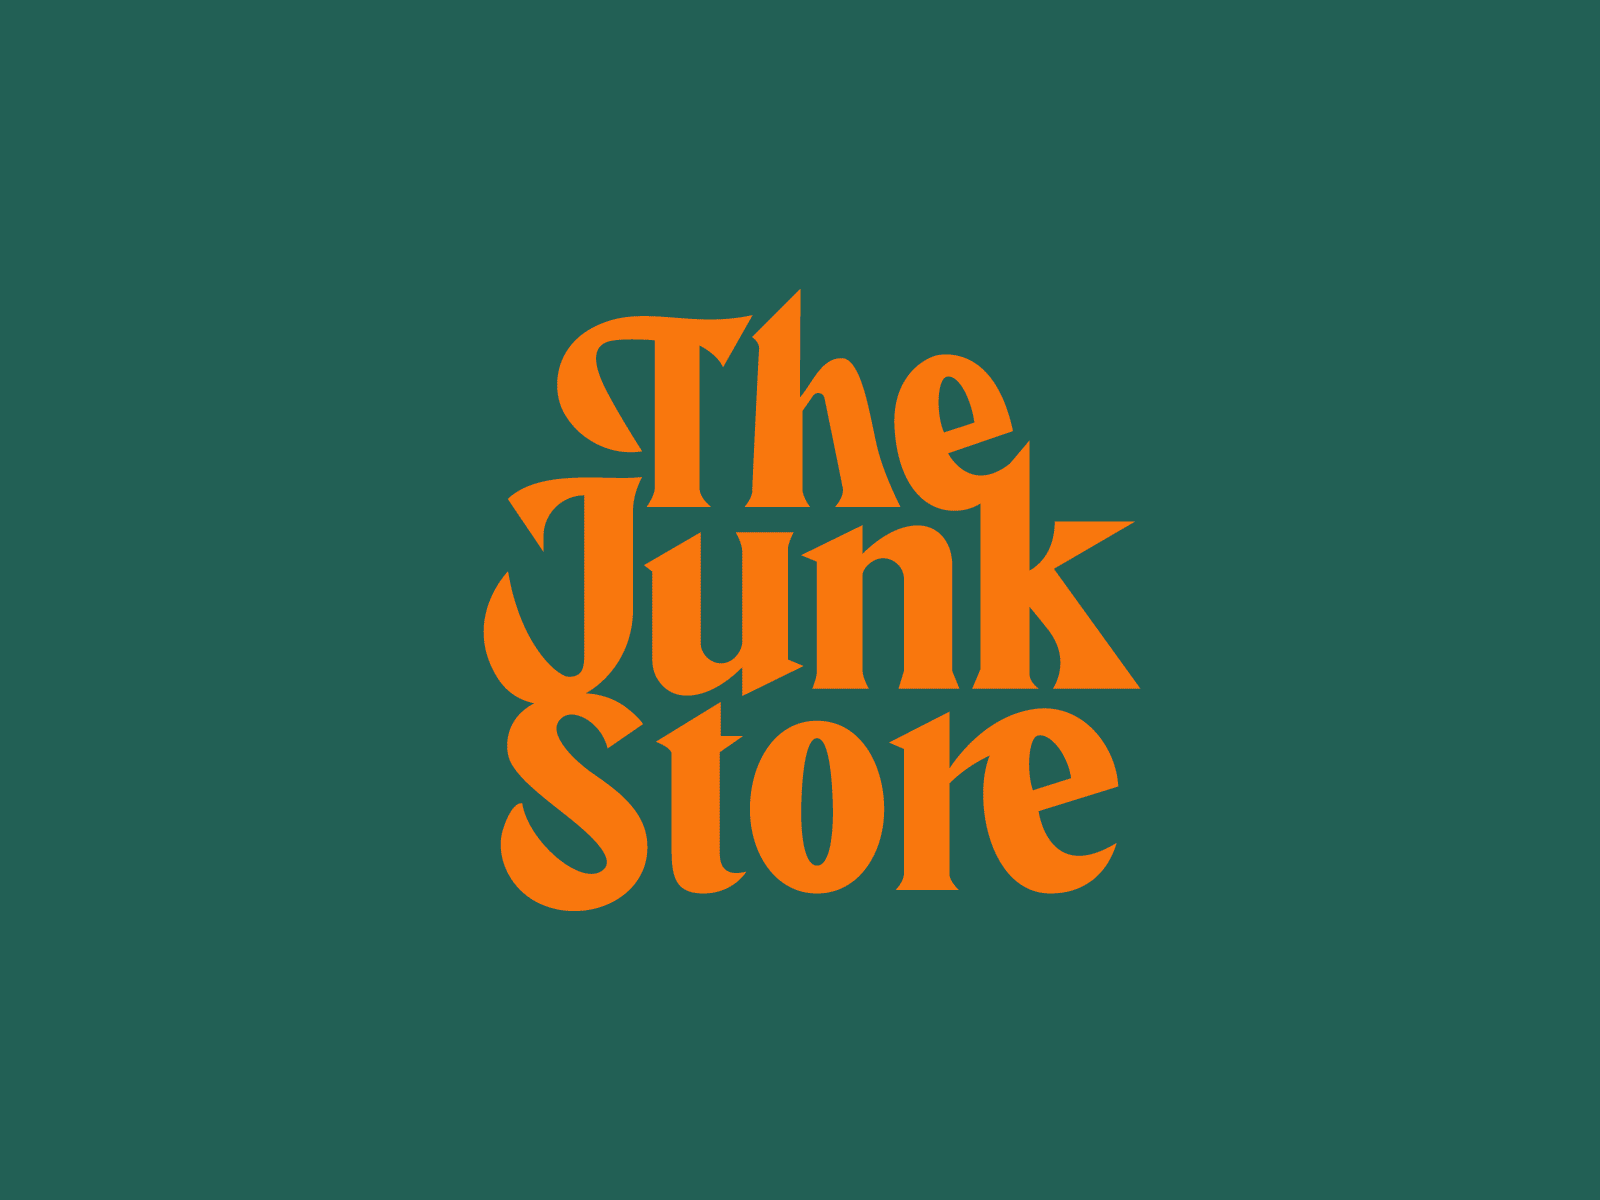 Junk Store Branding